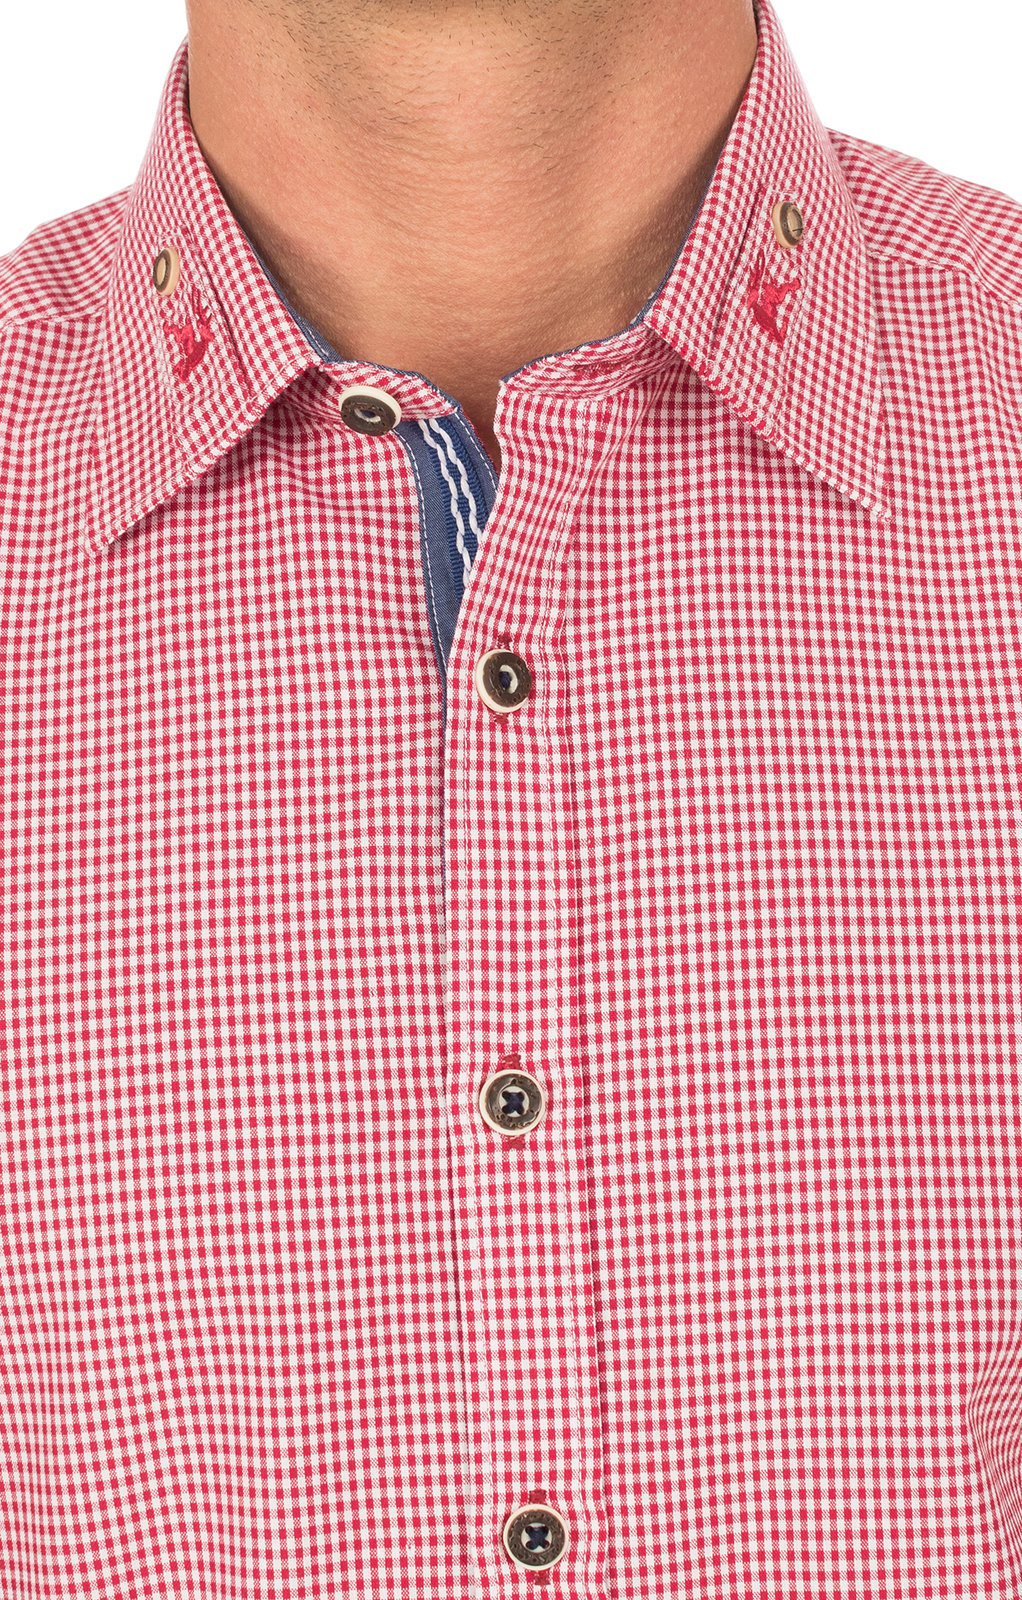 weitere Bilder von Trachtenhemd BERNI bestickter Kragen rot karo